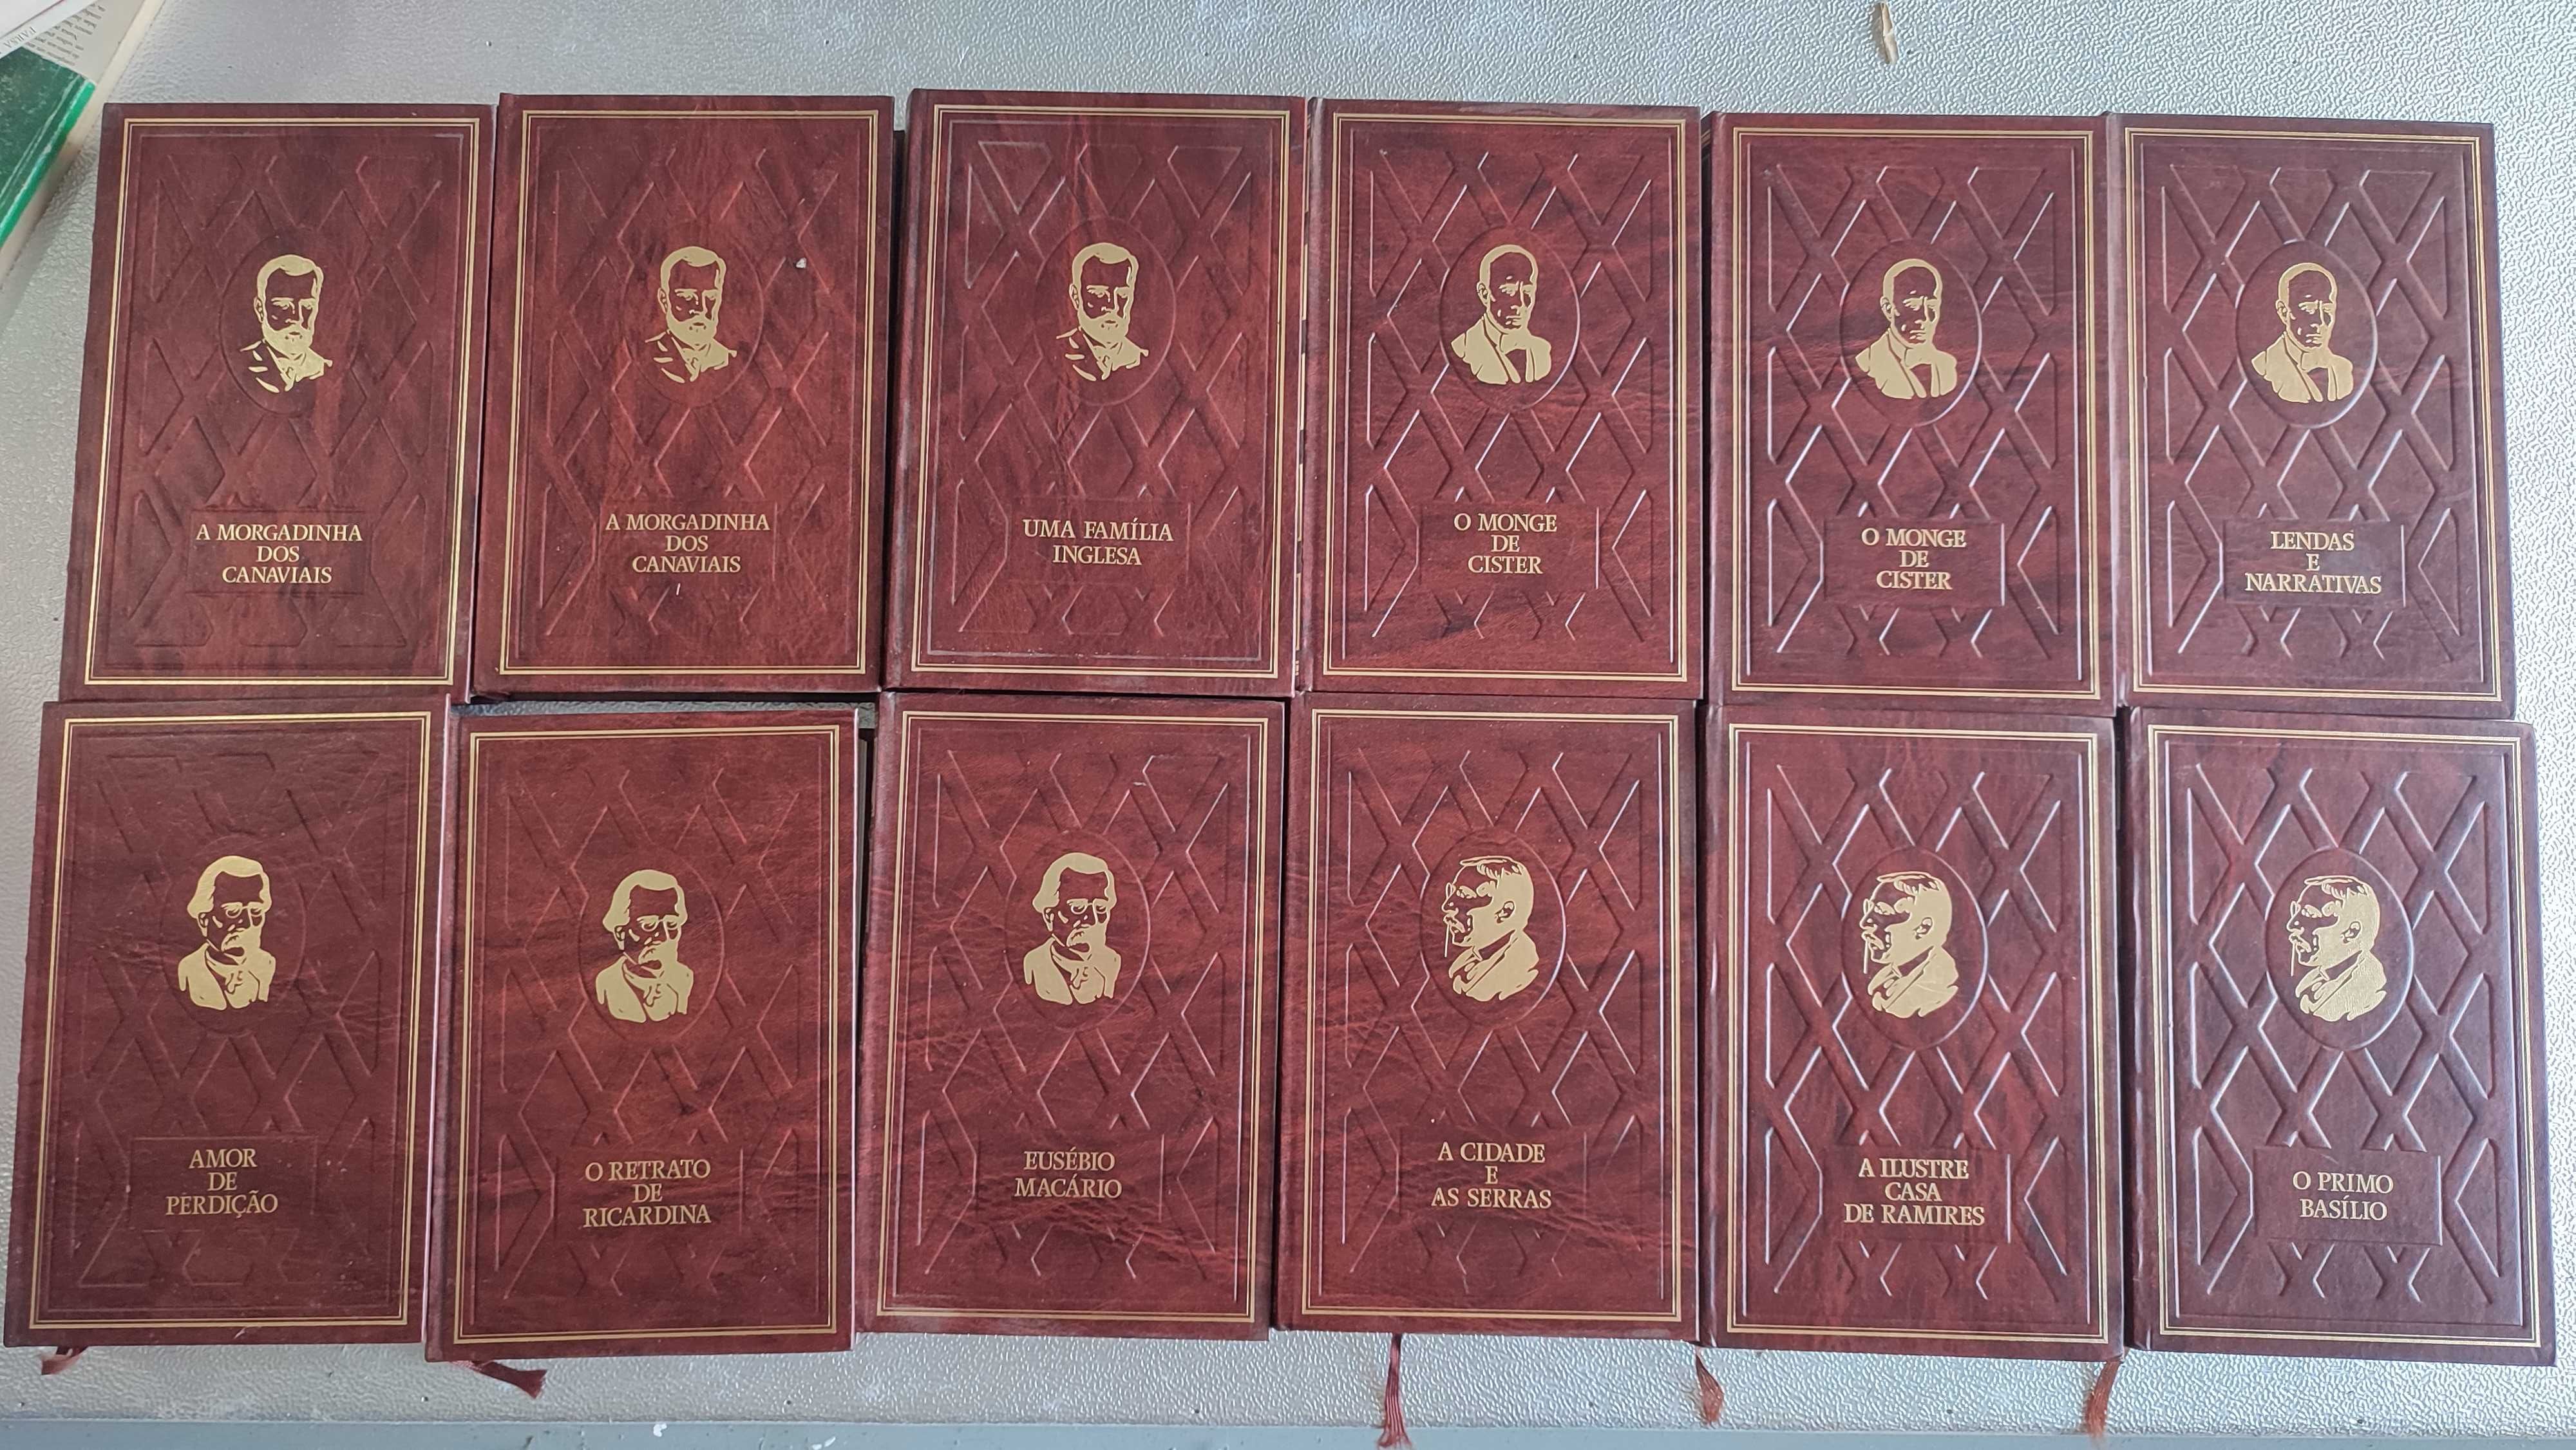 Lote 12 volumes Clássicos Portugueses - Edição em capa dura